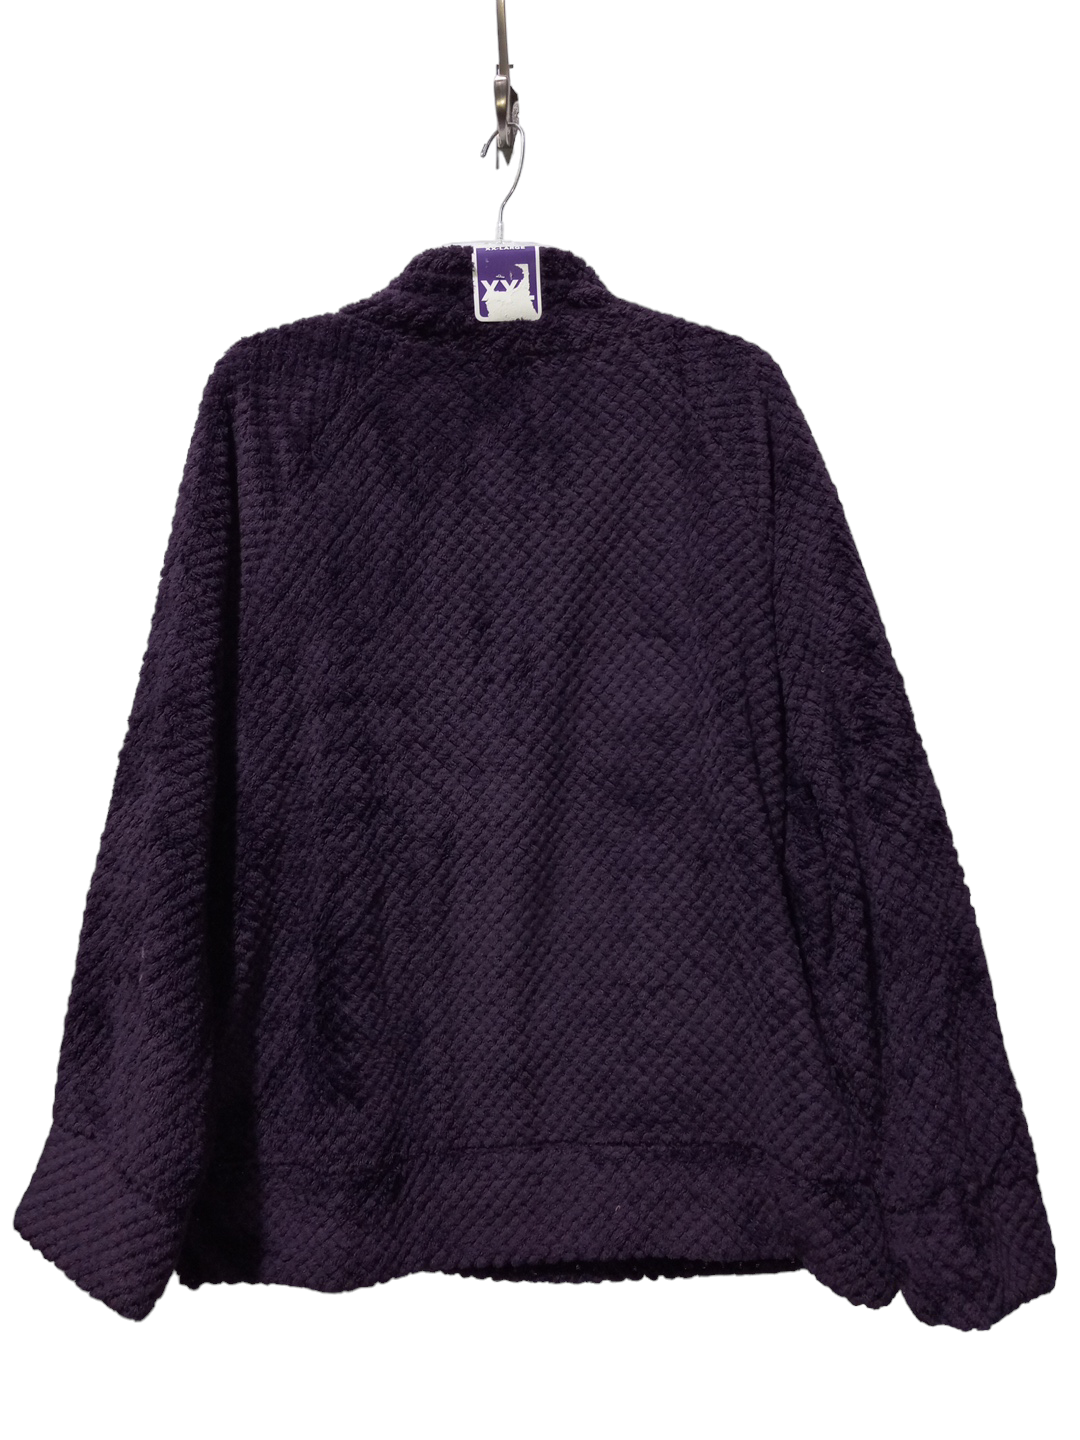 Purple Sweatshirt Hoodie Members Mark, Size 2x